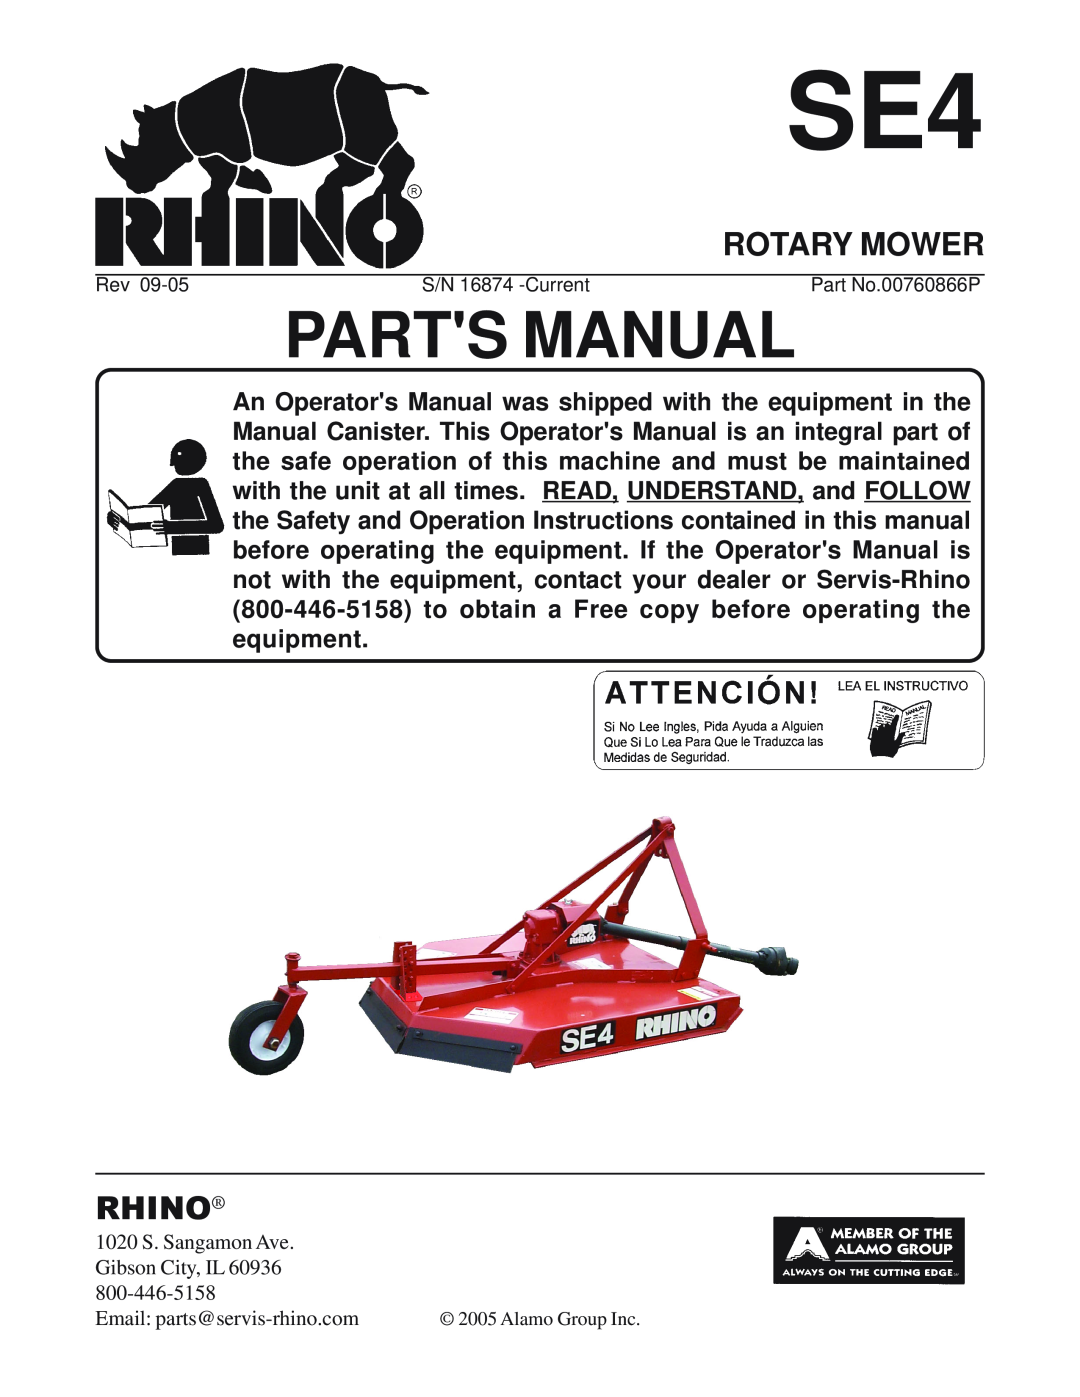 Servis-Rhino SE4 manual Rotary Mower, Parts Manual, Rhino 